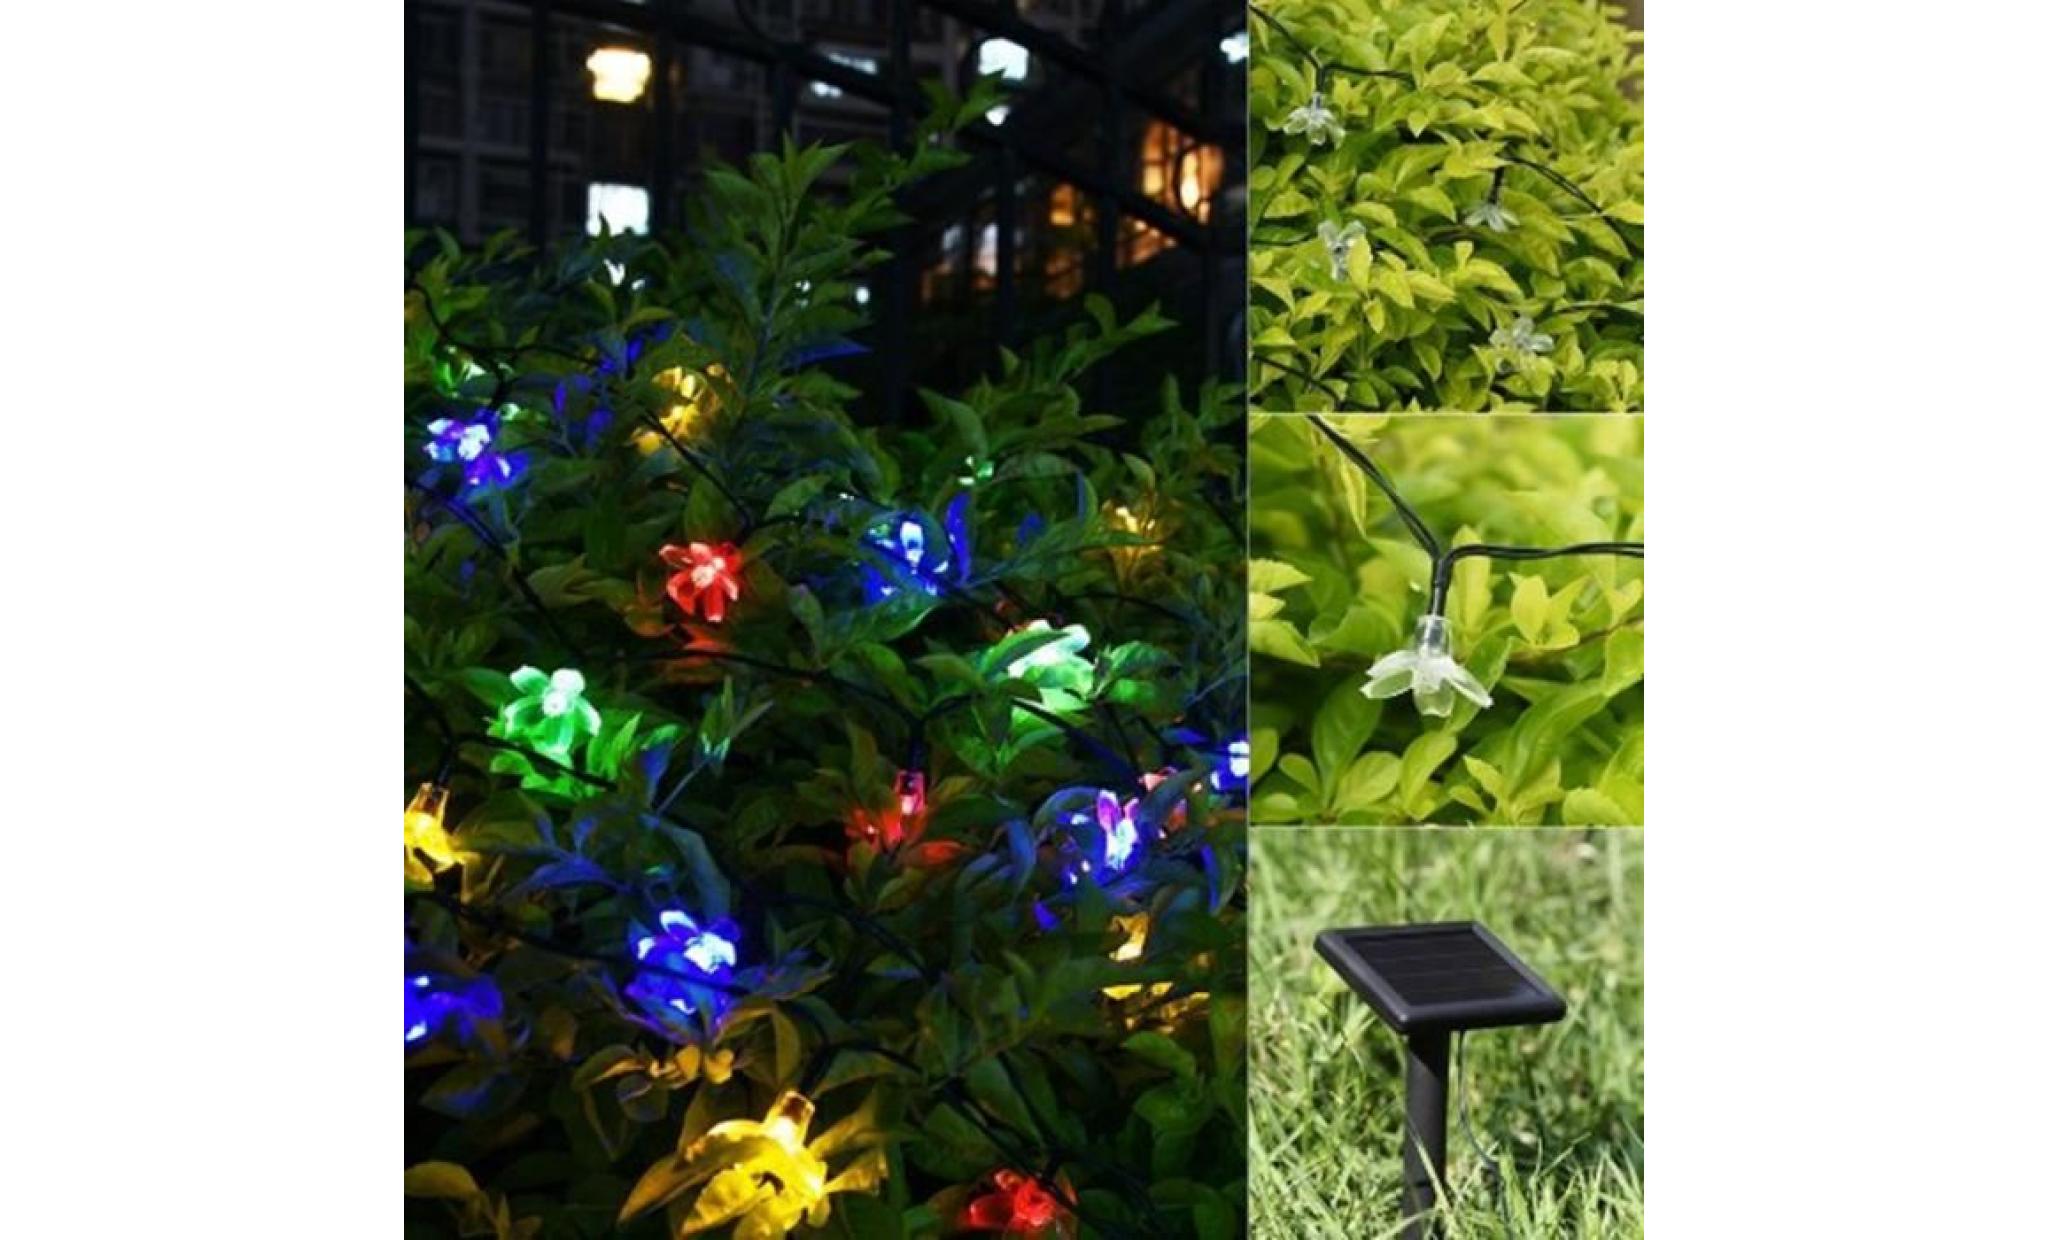 Guirlande lumineuse extérieur solaire fée Lumière 7 M 50 LED fleurs  éclairage décoration pour noël, fête, jardin -violet - Achat/Vente lampe  solaire jardin pas cher 